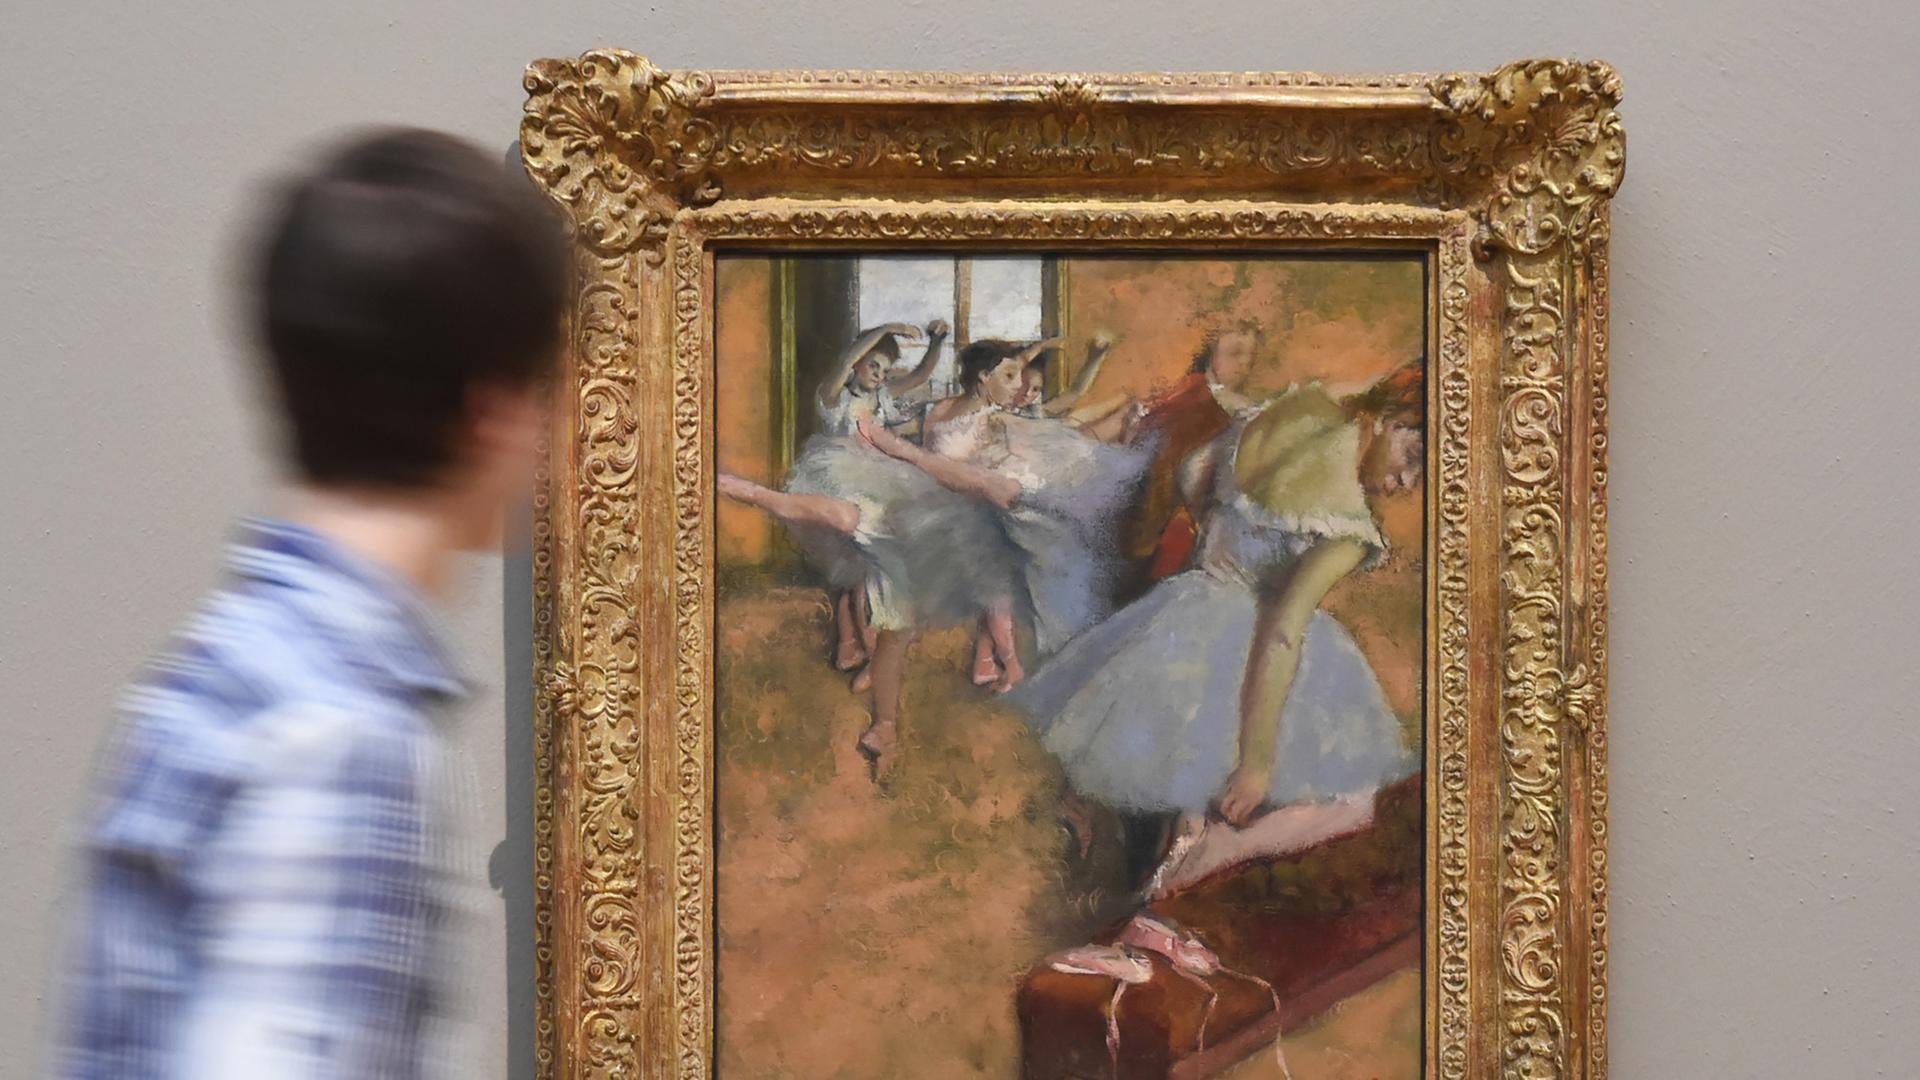 Ein Besucher der Staatlichen Kunsthalle Karlsruhe (Baden-Württemberg) betrachtet am 06.11.2014 das Werk "Die Ballettklasse" aus den Jahren 1880 _ 1900 von Edgar Degas.